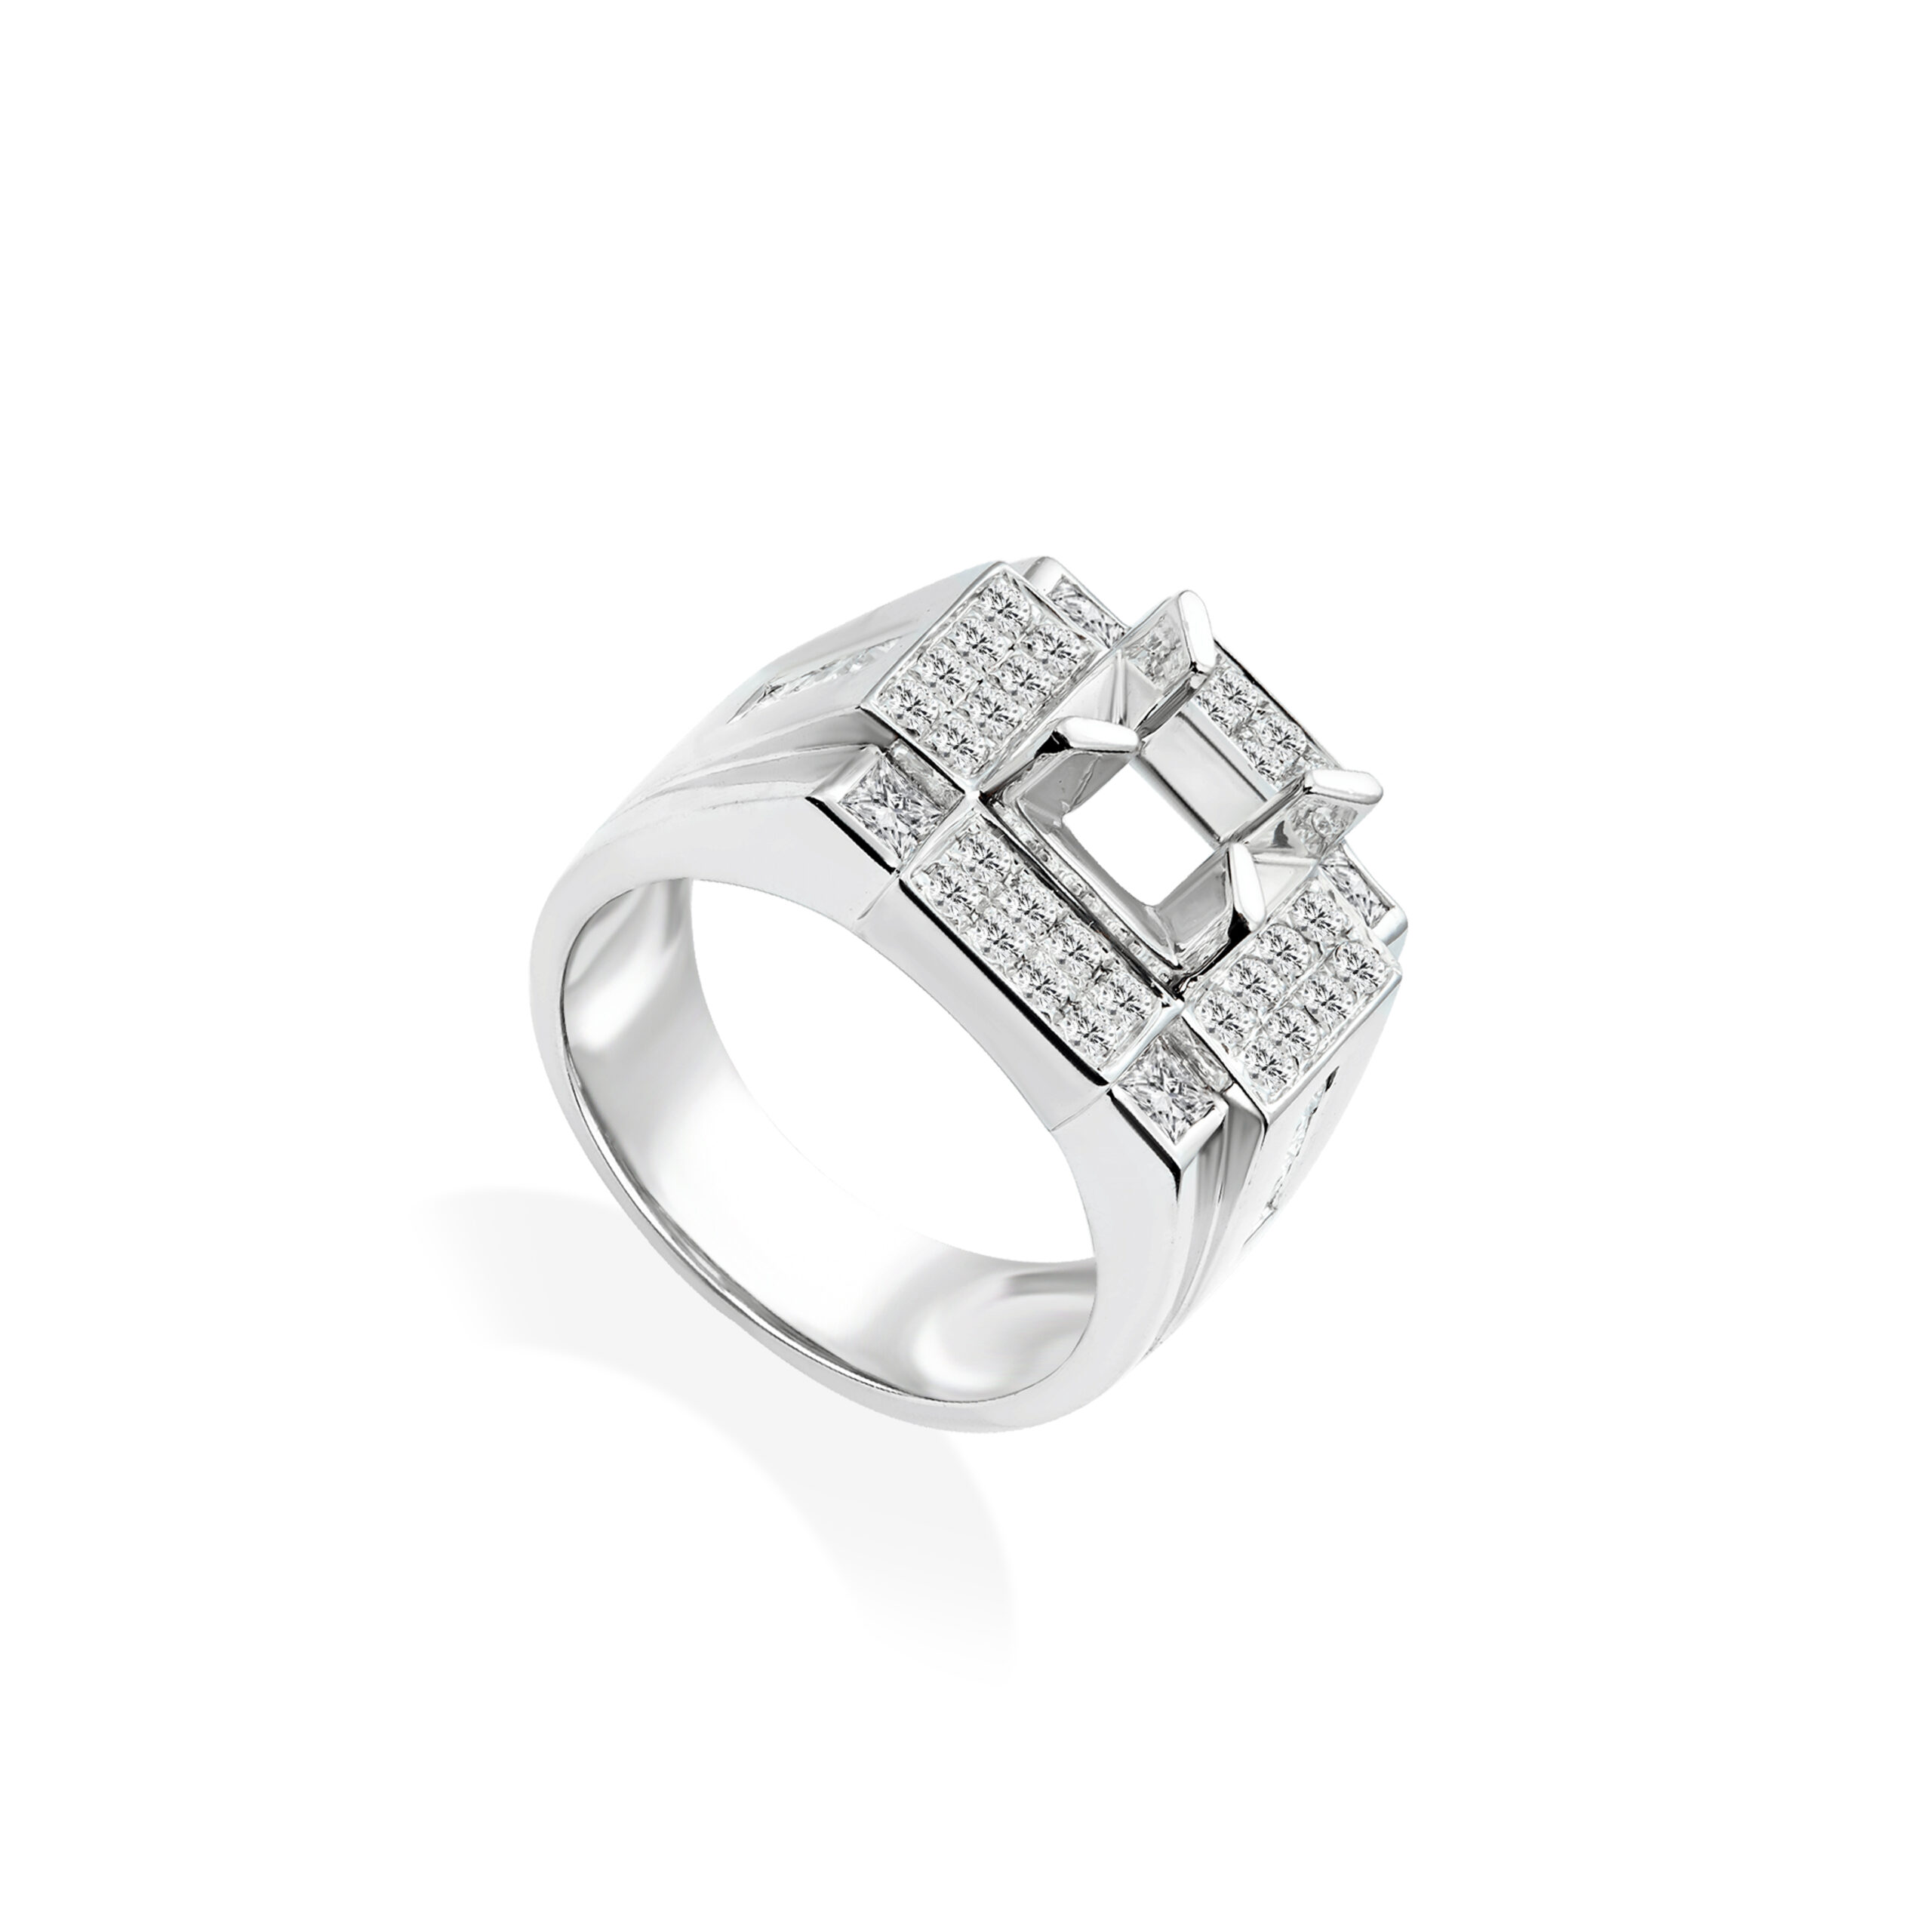 Nhẫn nam kim cương vàng trắng 14k pnj ddddw000266 | pnj.com.vn